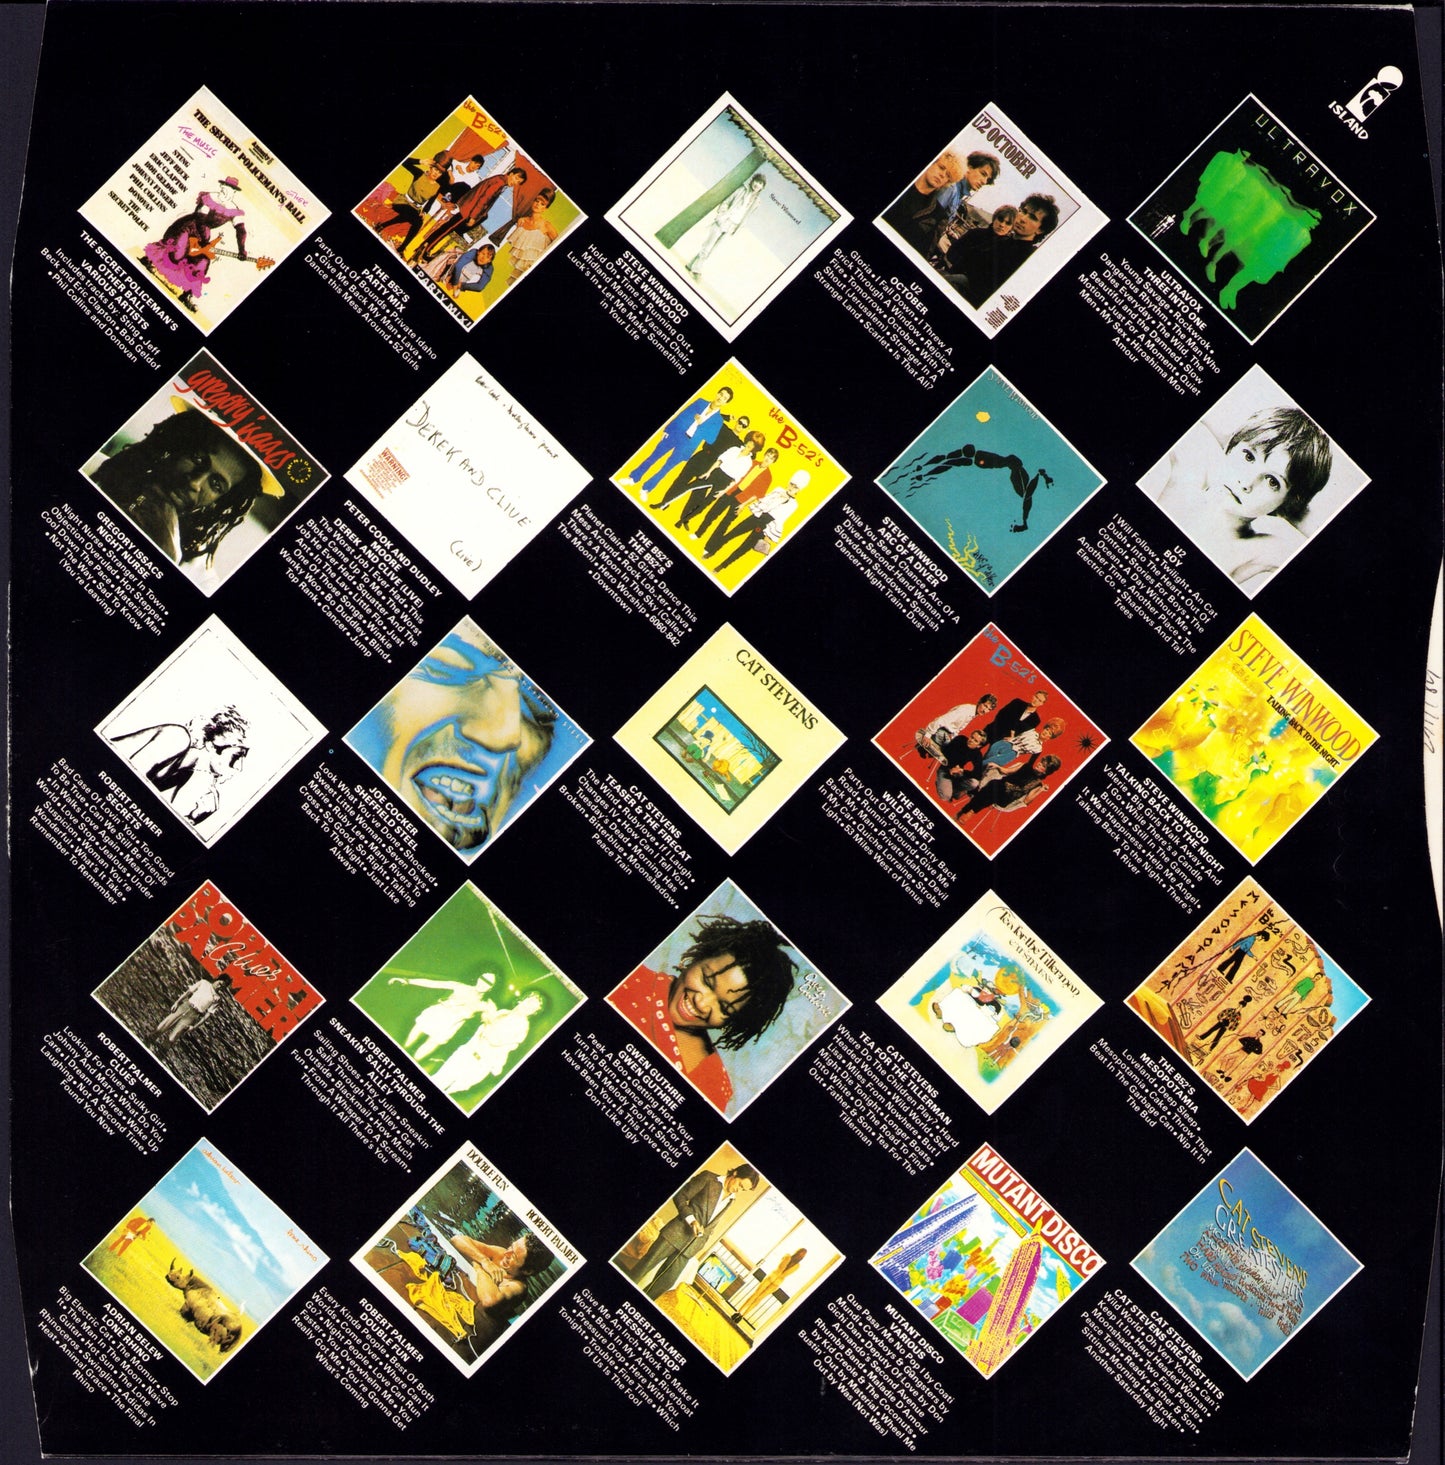 Ini Kamoze - Ini Kamoze Vinyl LP